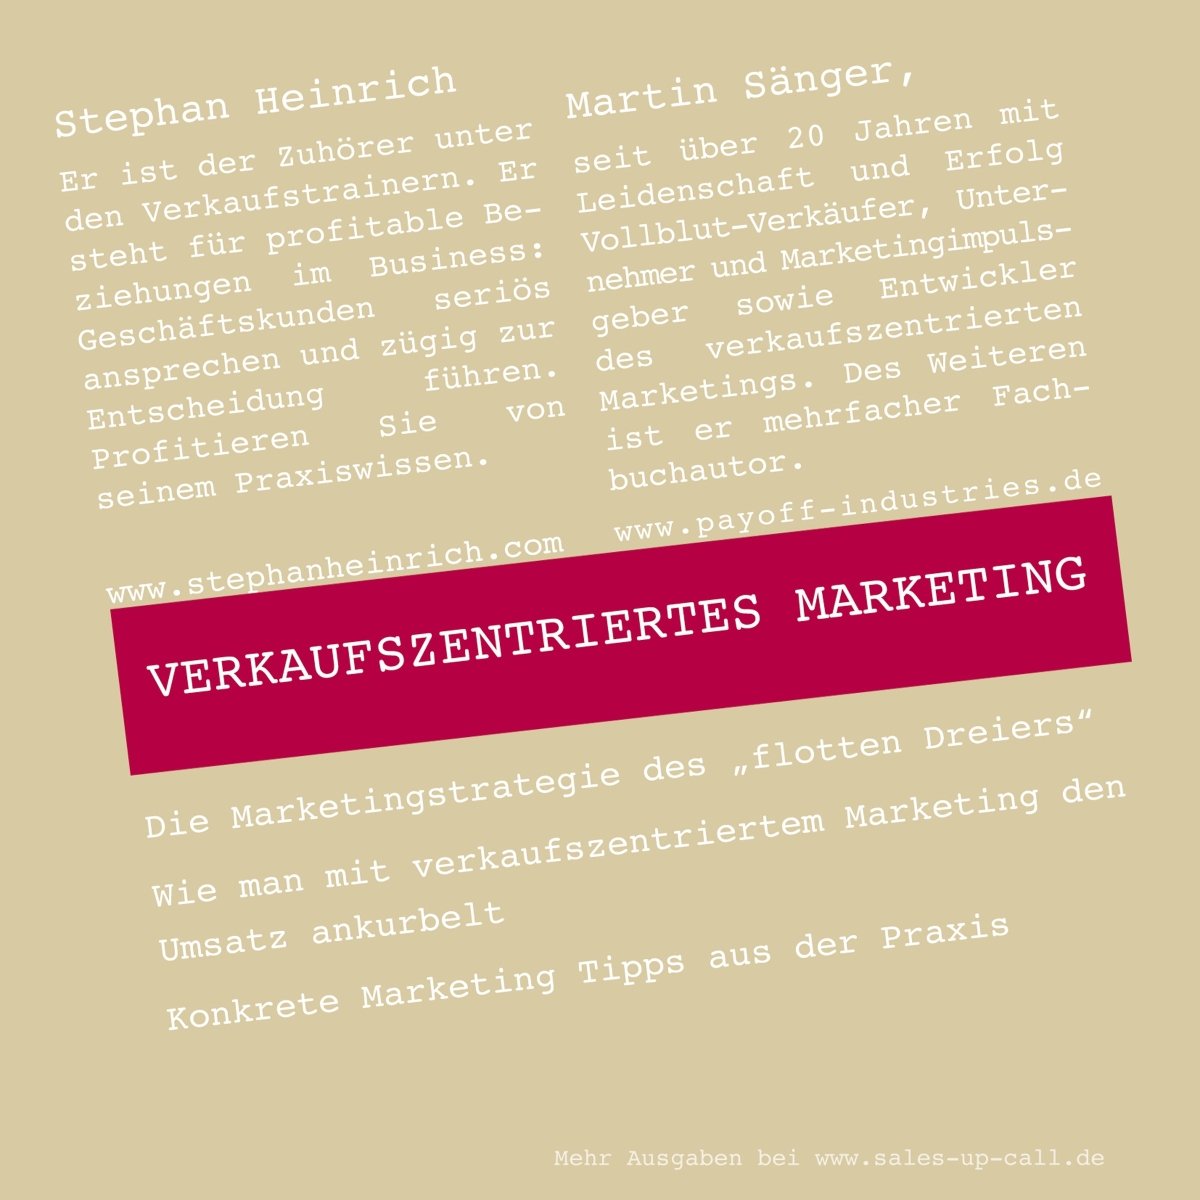 Verkaufszentriertes Marketing - Sales-up-Call - Stephan Heinrich